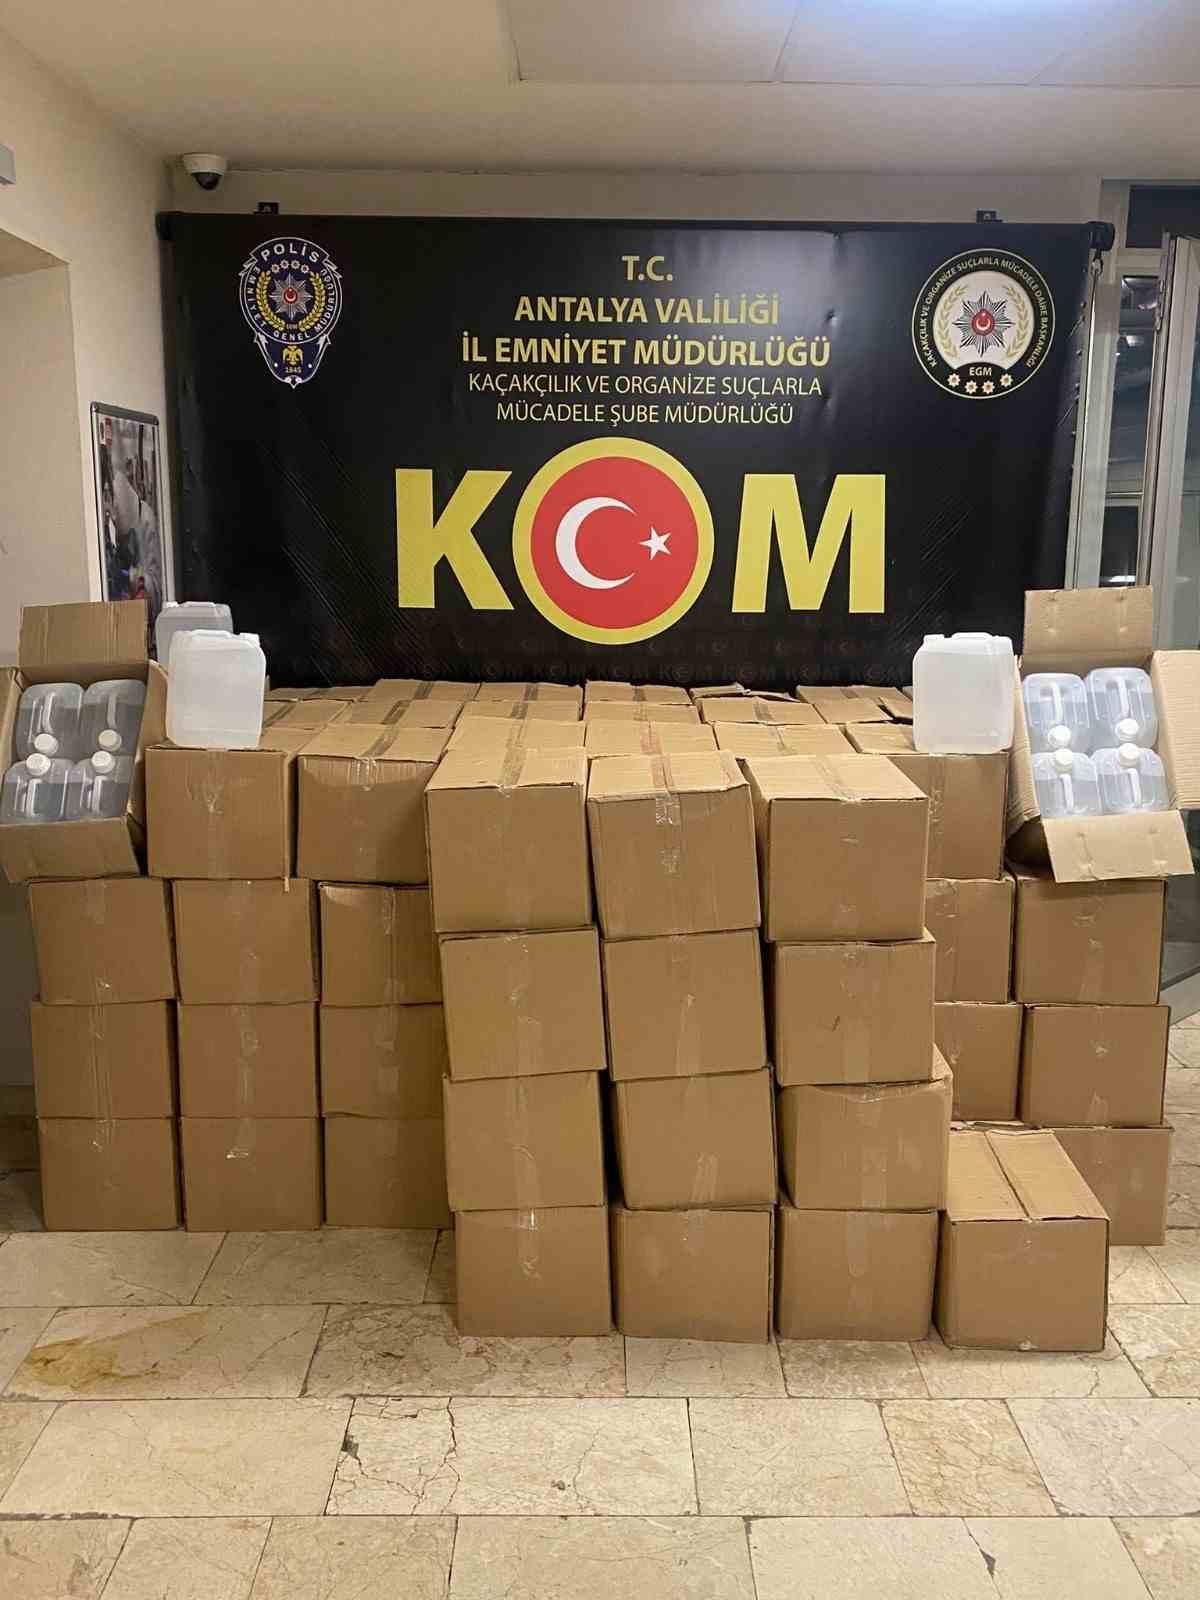 Antalya’da 7 bin litre kaçak alkol operasyonu
